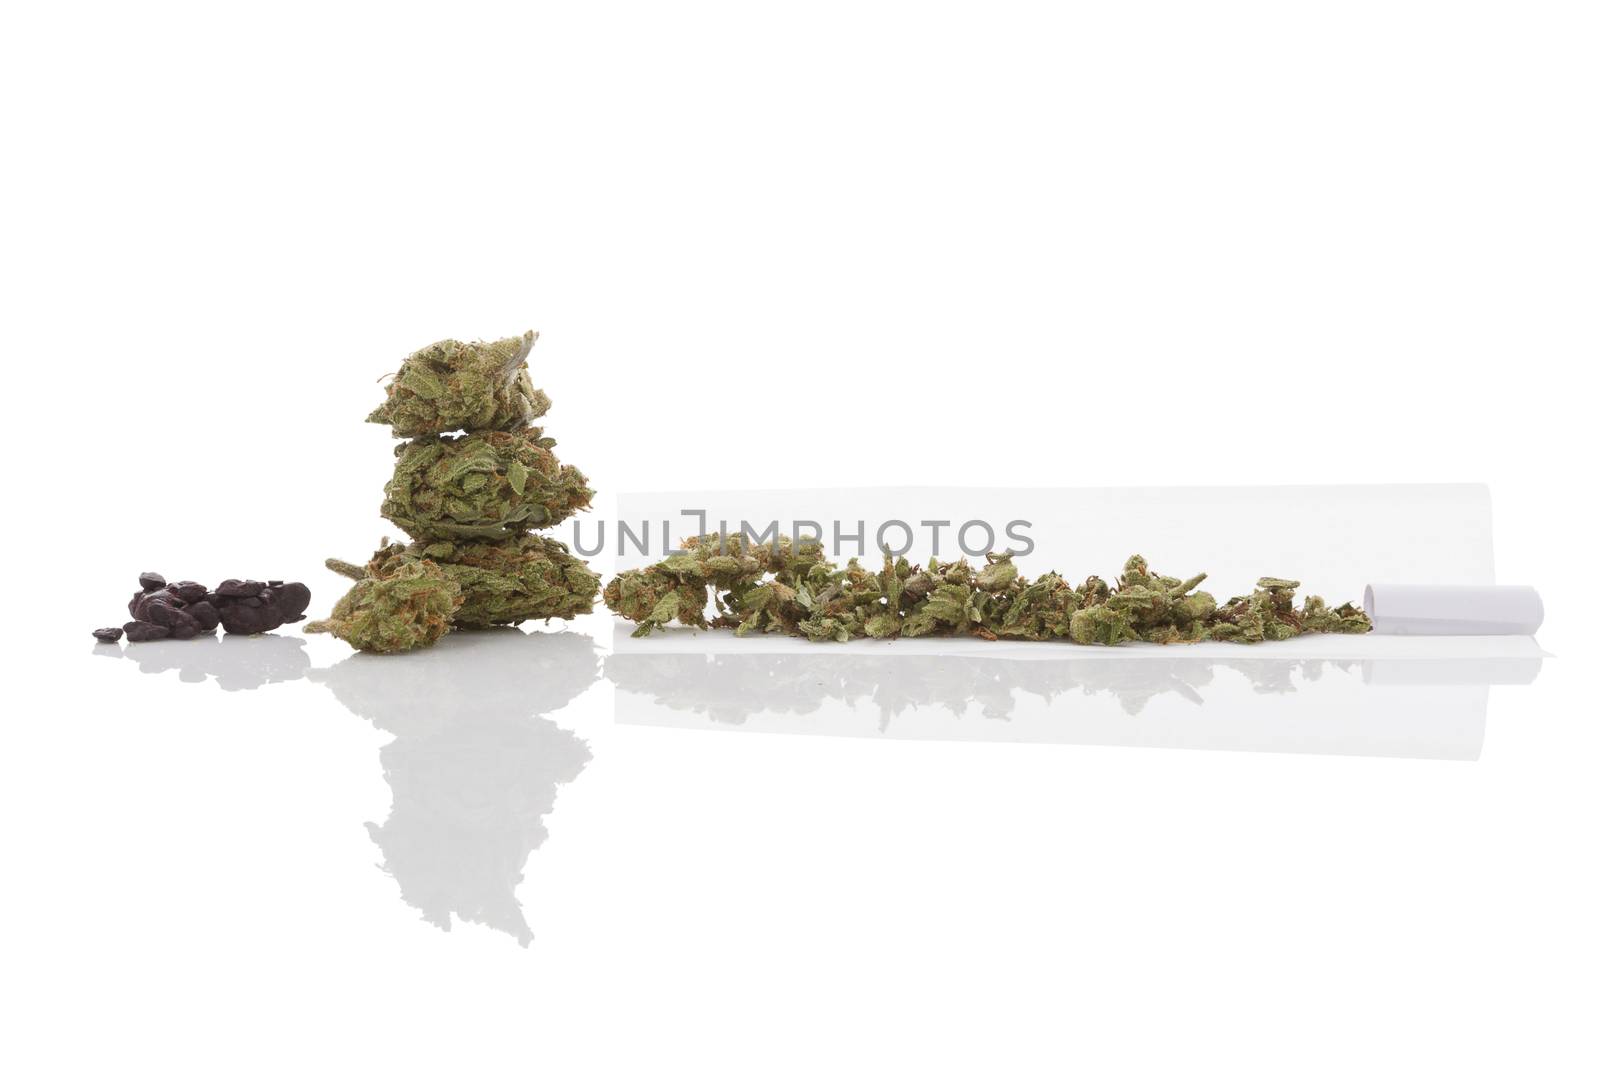 Smoking marijuana. Cannabis abuse. Marijuana bud, hashish and rolled joint isolated on white background. 